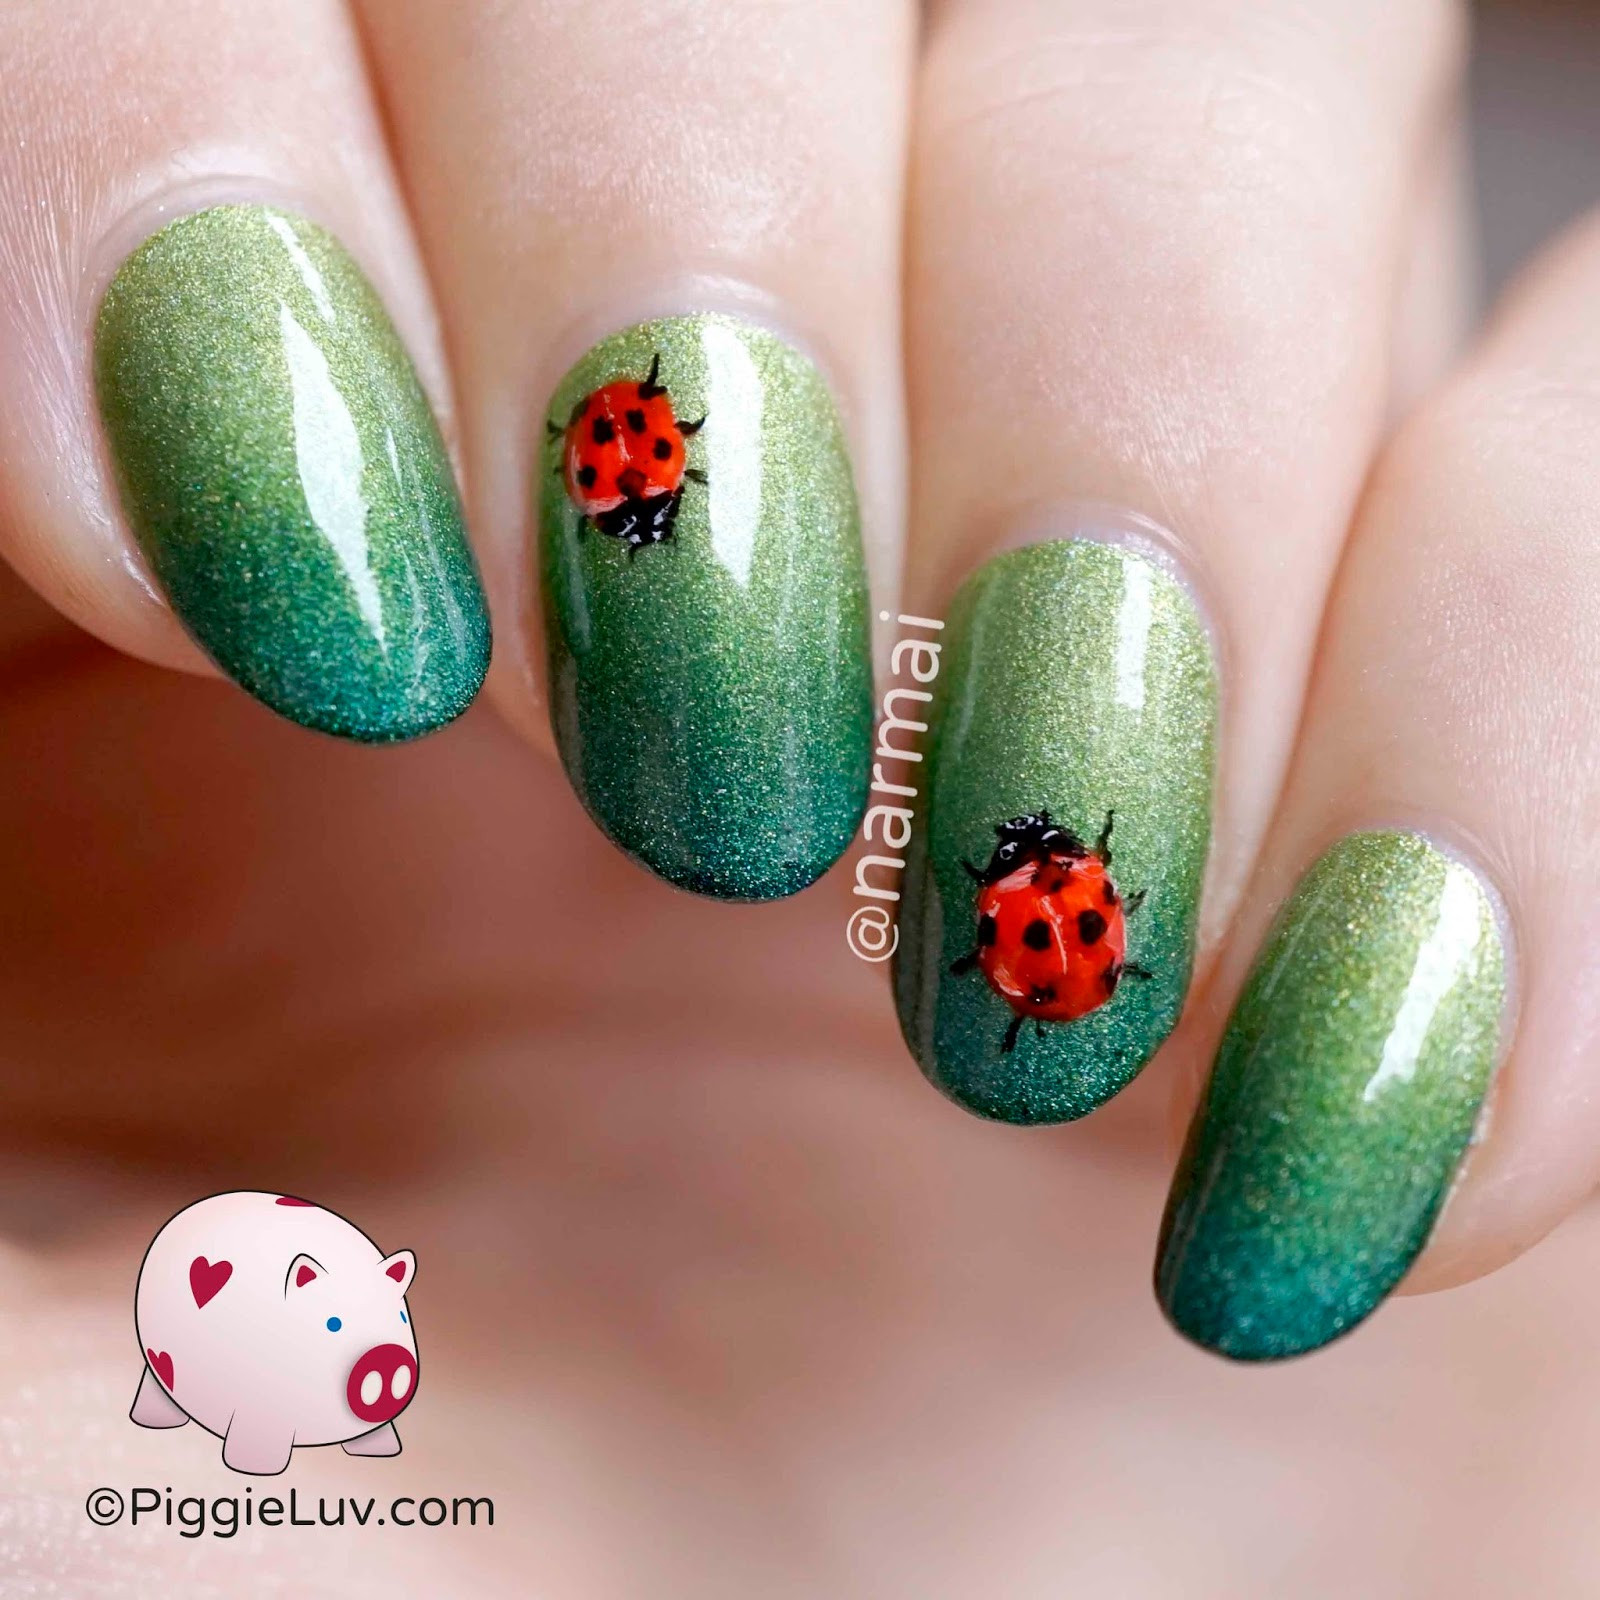 Ladybug Nail Art
 PiggieLuv Freehand ladybug nail art